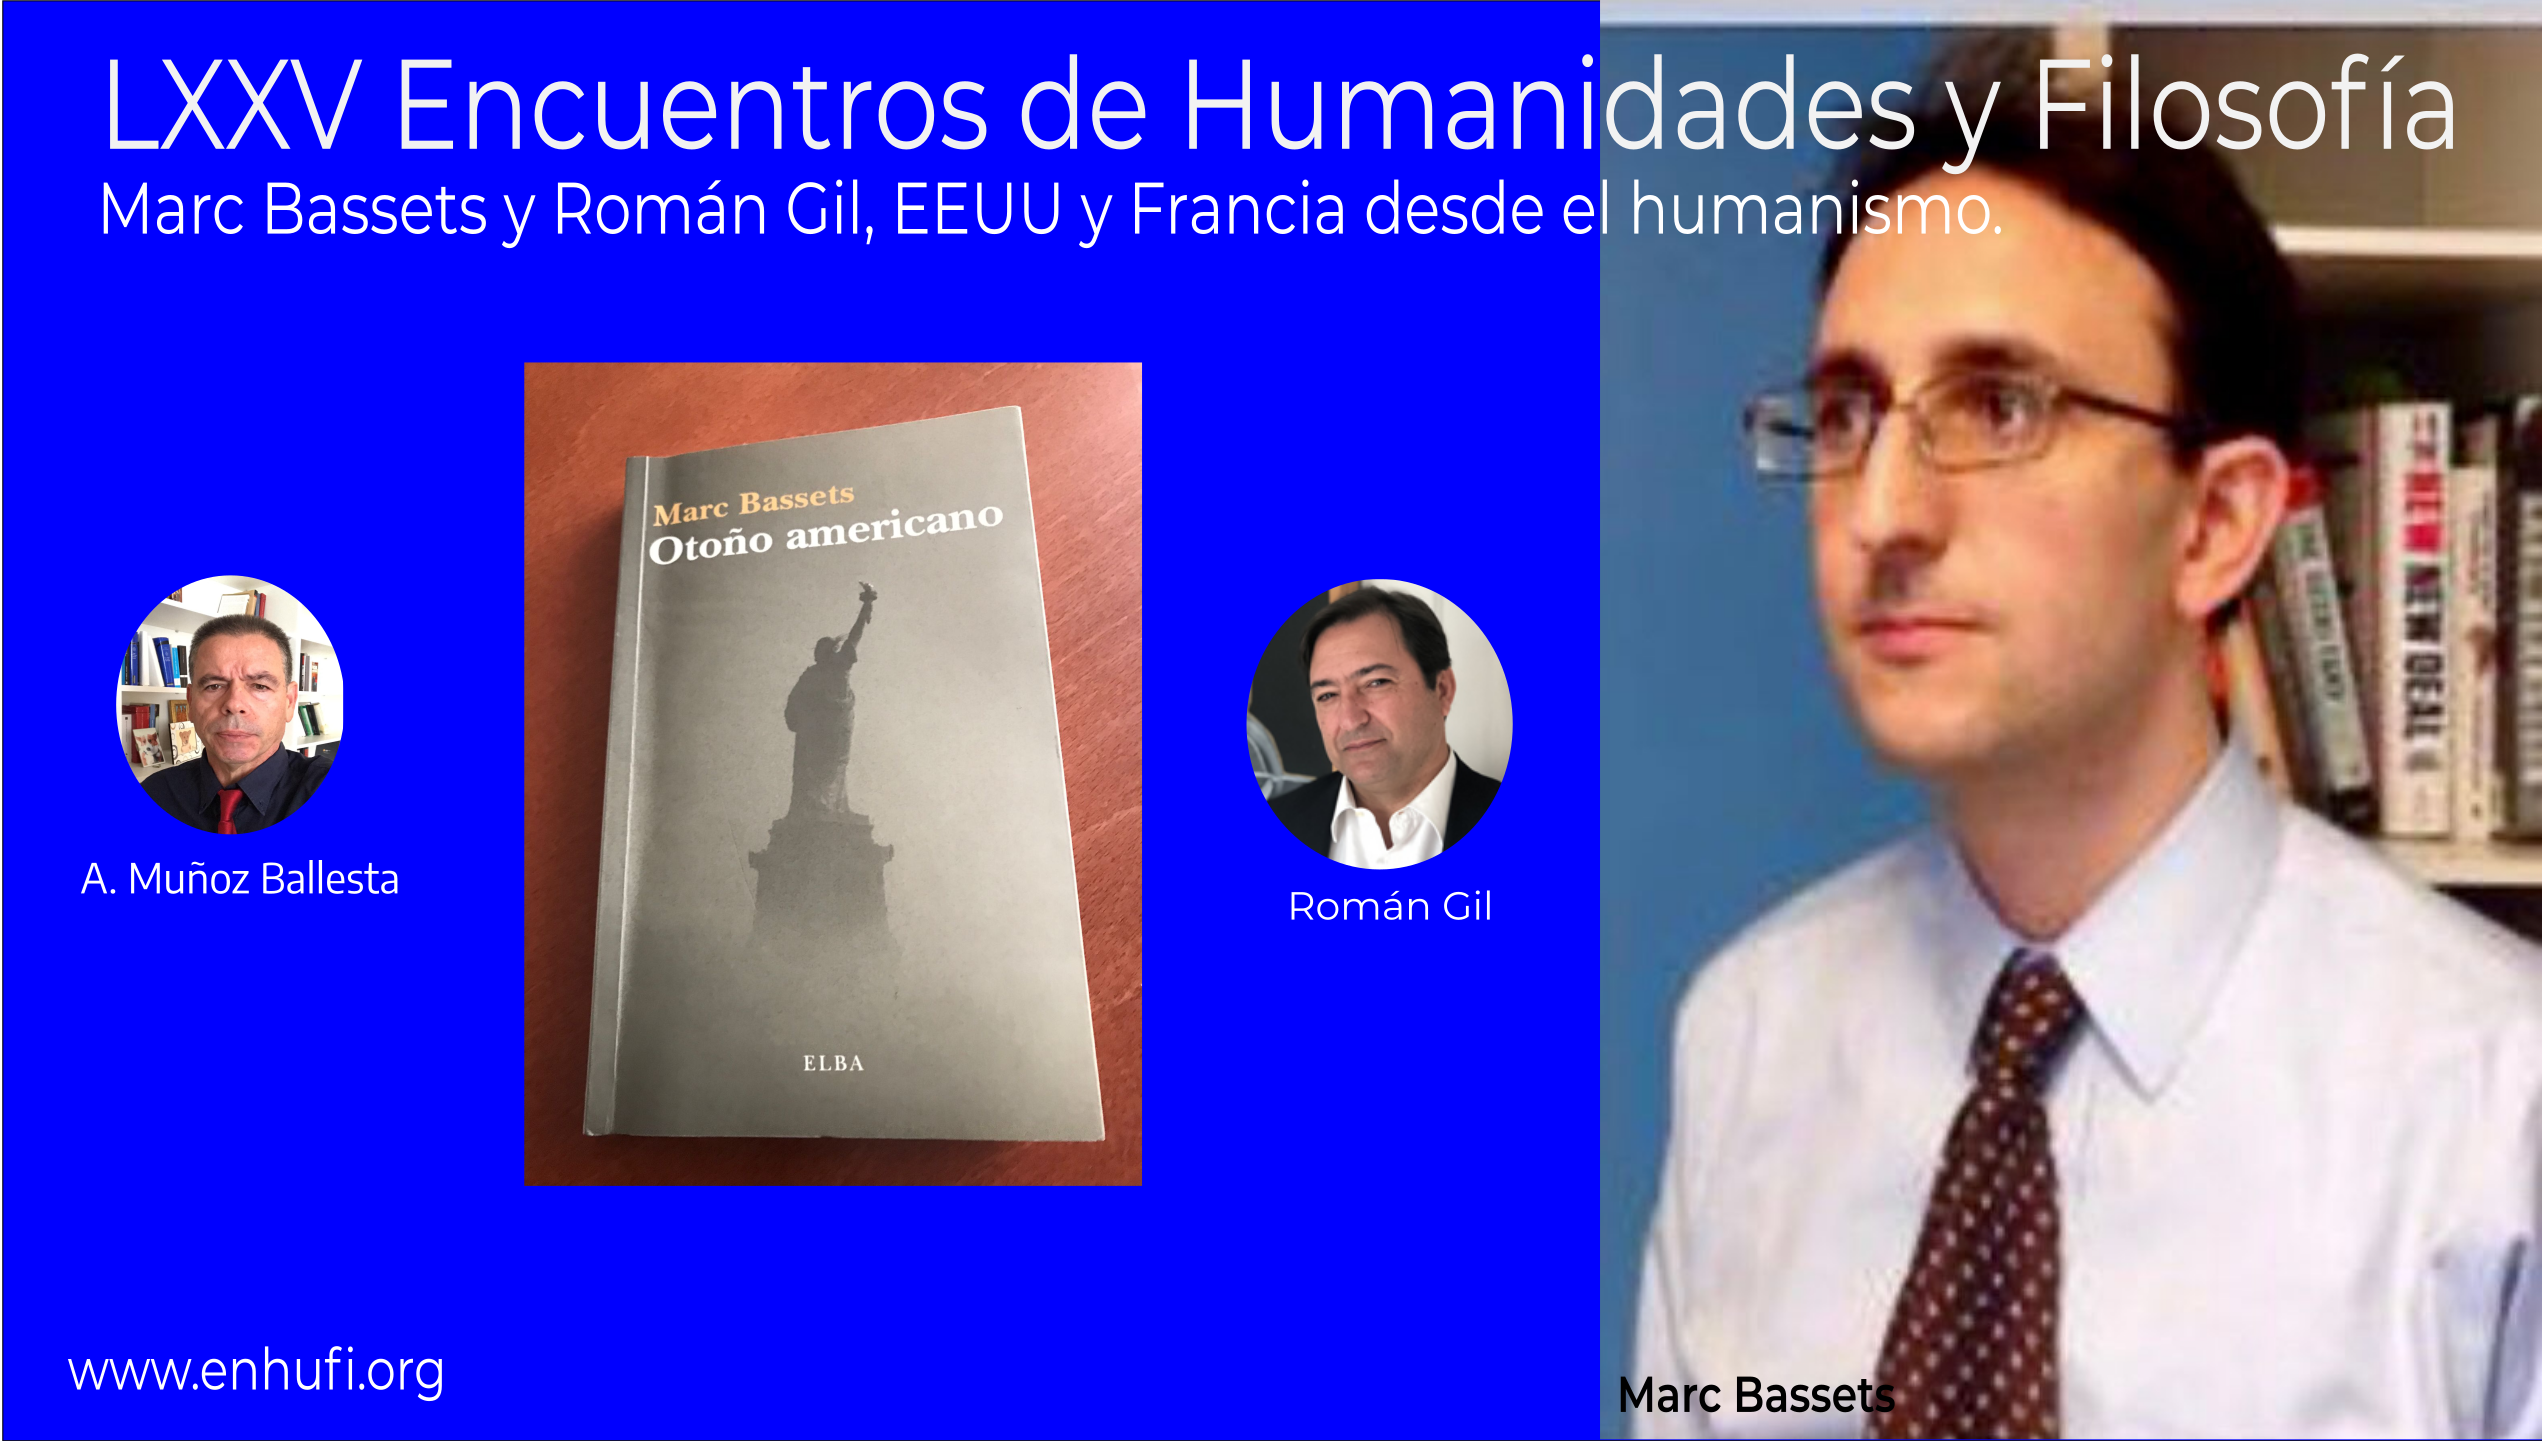 LXXV Encuentros Humanidades y Filosofía,Marc Bassets y Román Gil, EEUU y Francia desde el humanismo.